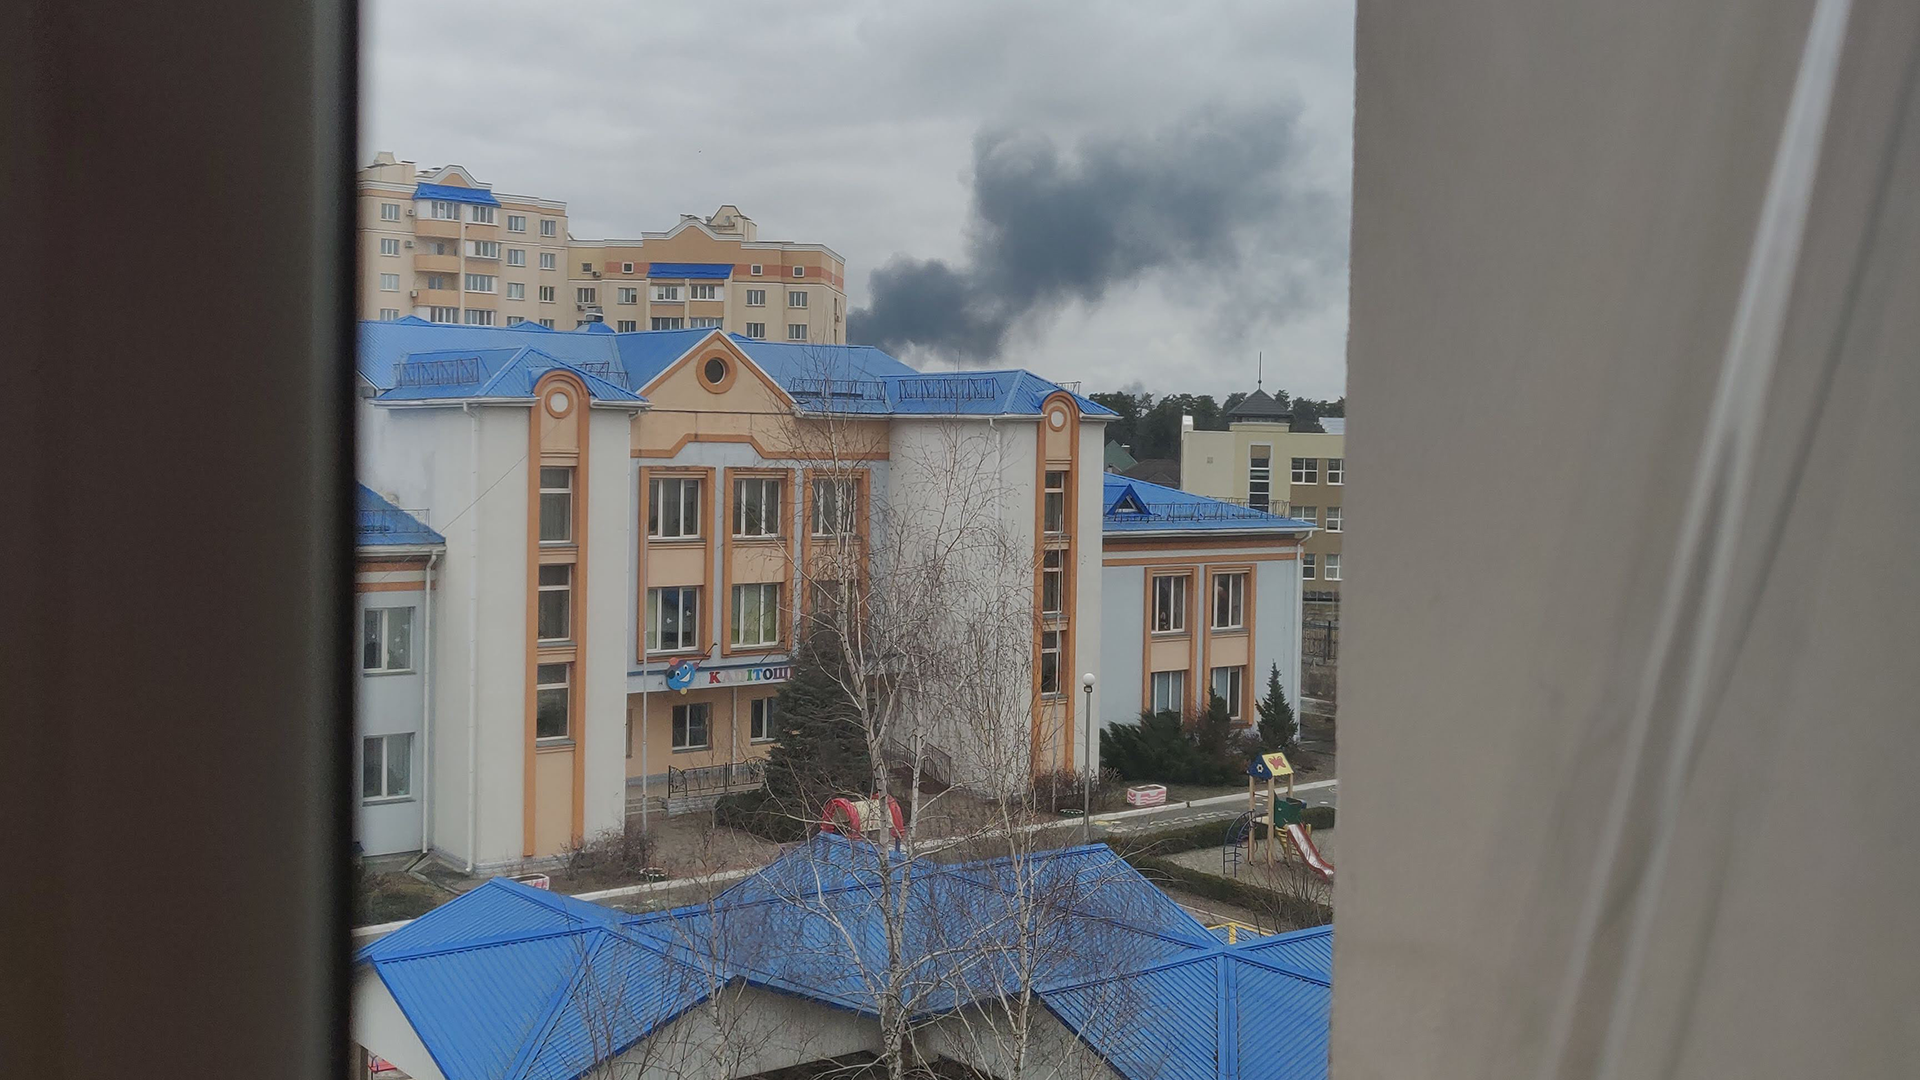 Foto a través de la ventana de Nikita con vista al bombardeo del aeropuerto de Hostomel.